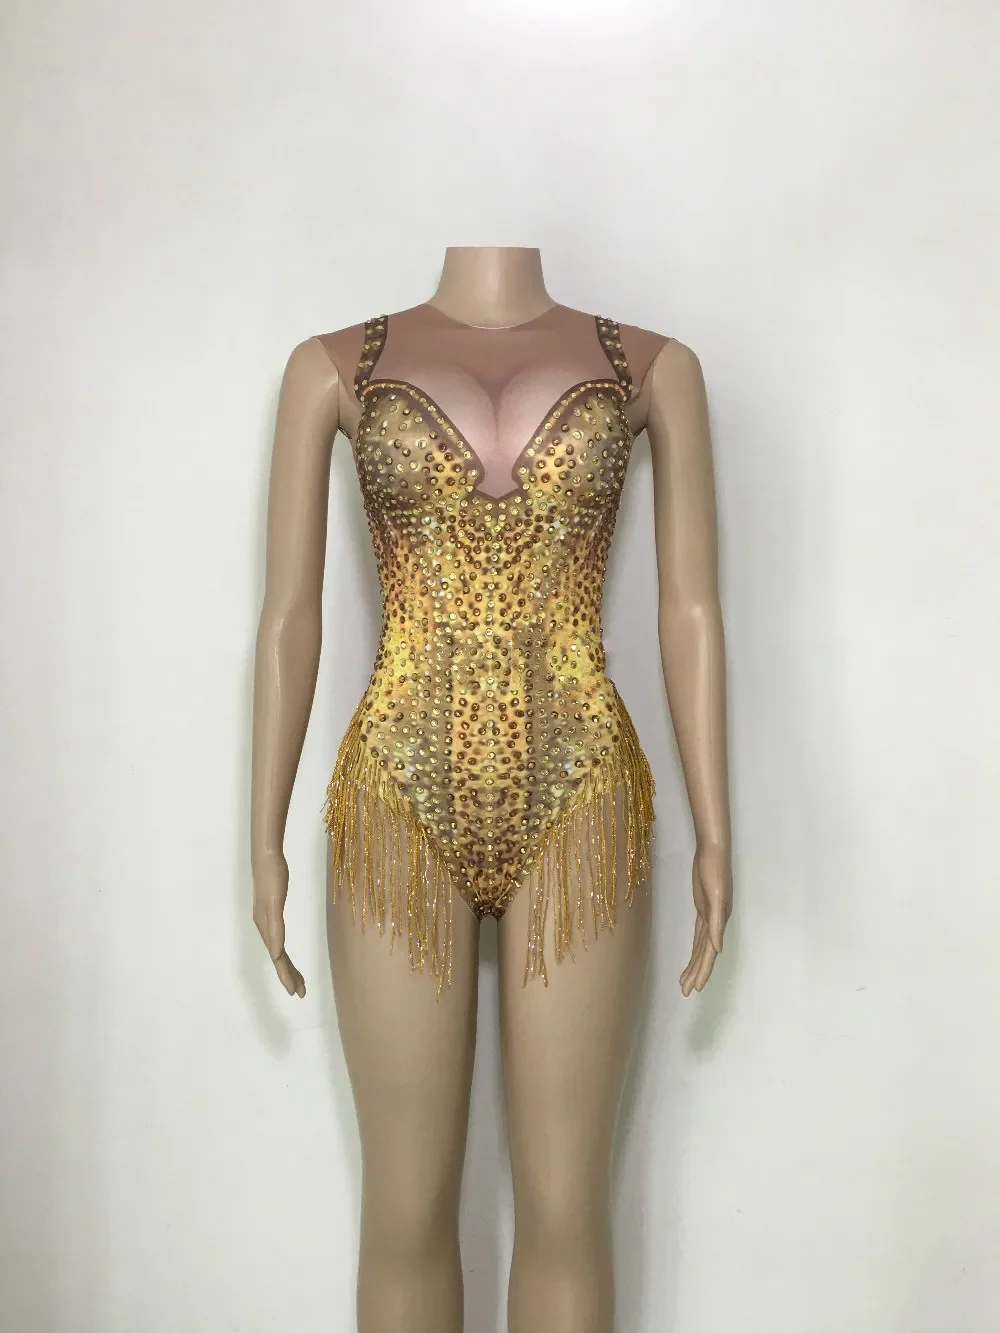 leotard-dourado-brilhante-para-mulheres-bodysuit-strass-desgaste-do-desempenho-da-danca-do-estagio-boate-sexy-trajes-de-baile